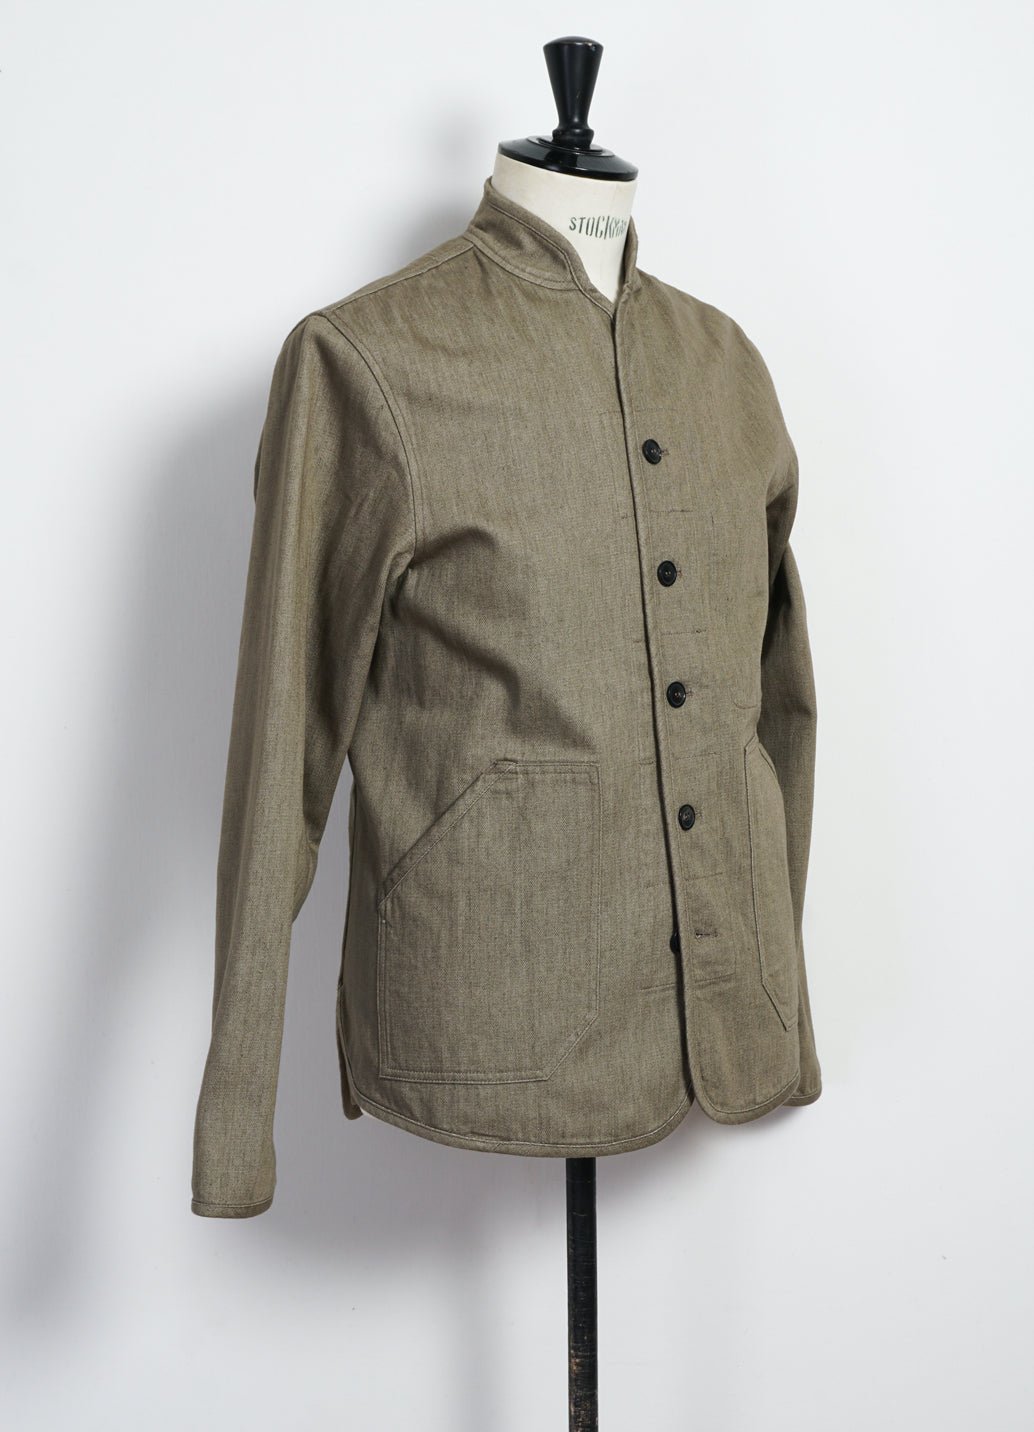 HANSEN GARMENTS - ERLING | Quilted Work Jacket | Safari - HANSEN Garments